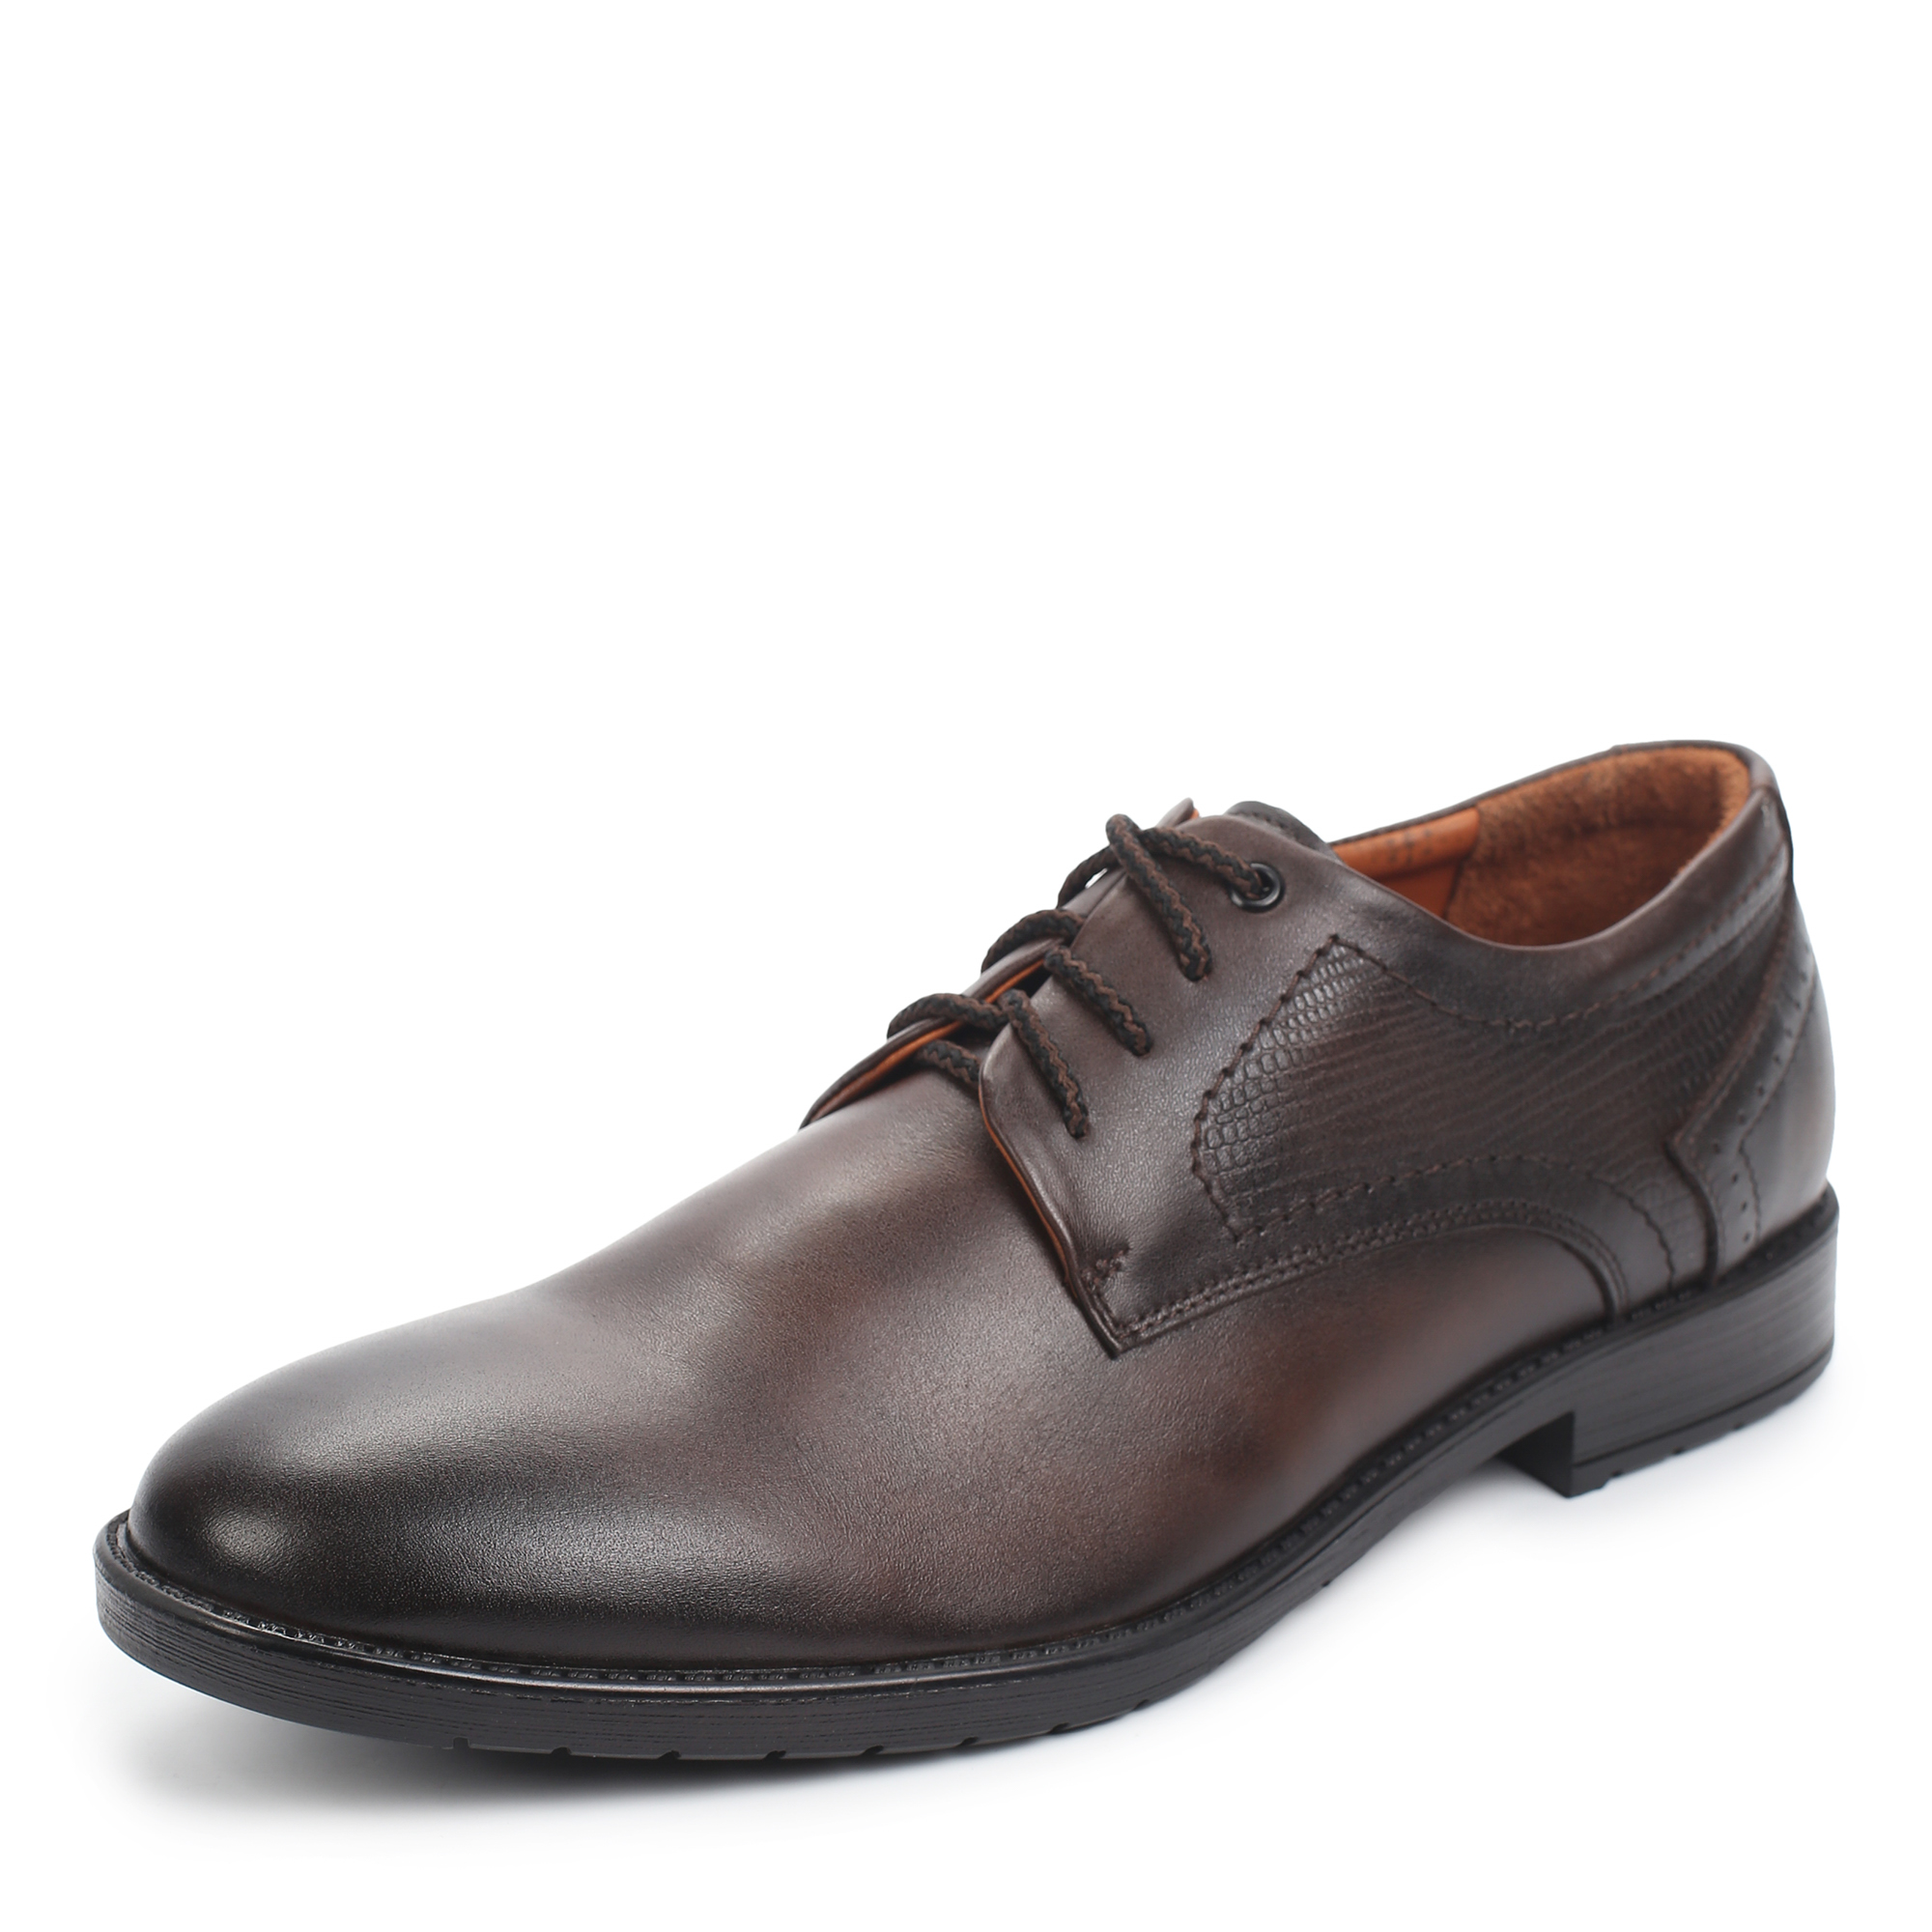 Туфли/полуботинки Thomas Munz 306-014B-1109, цвет коричневый, размер 41 - фото 2